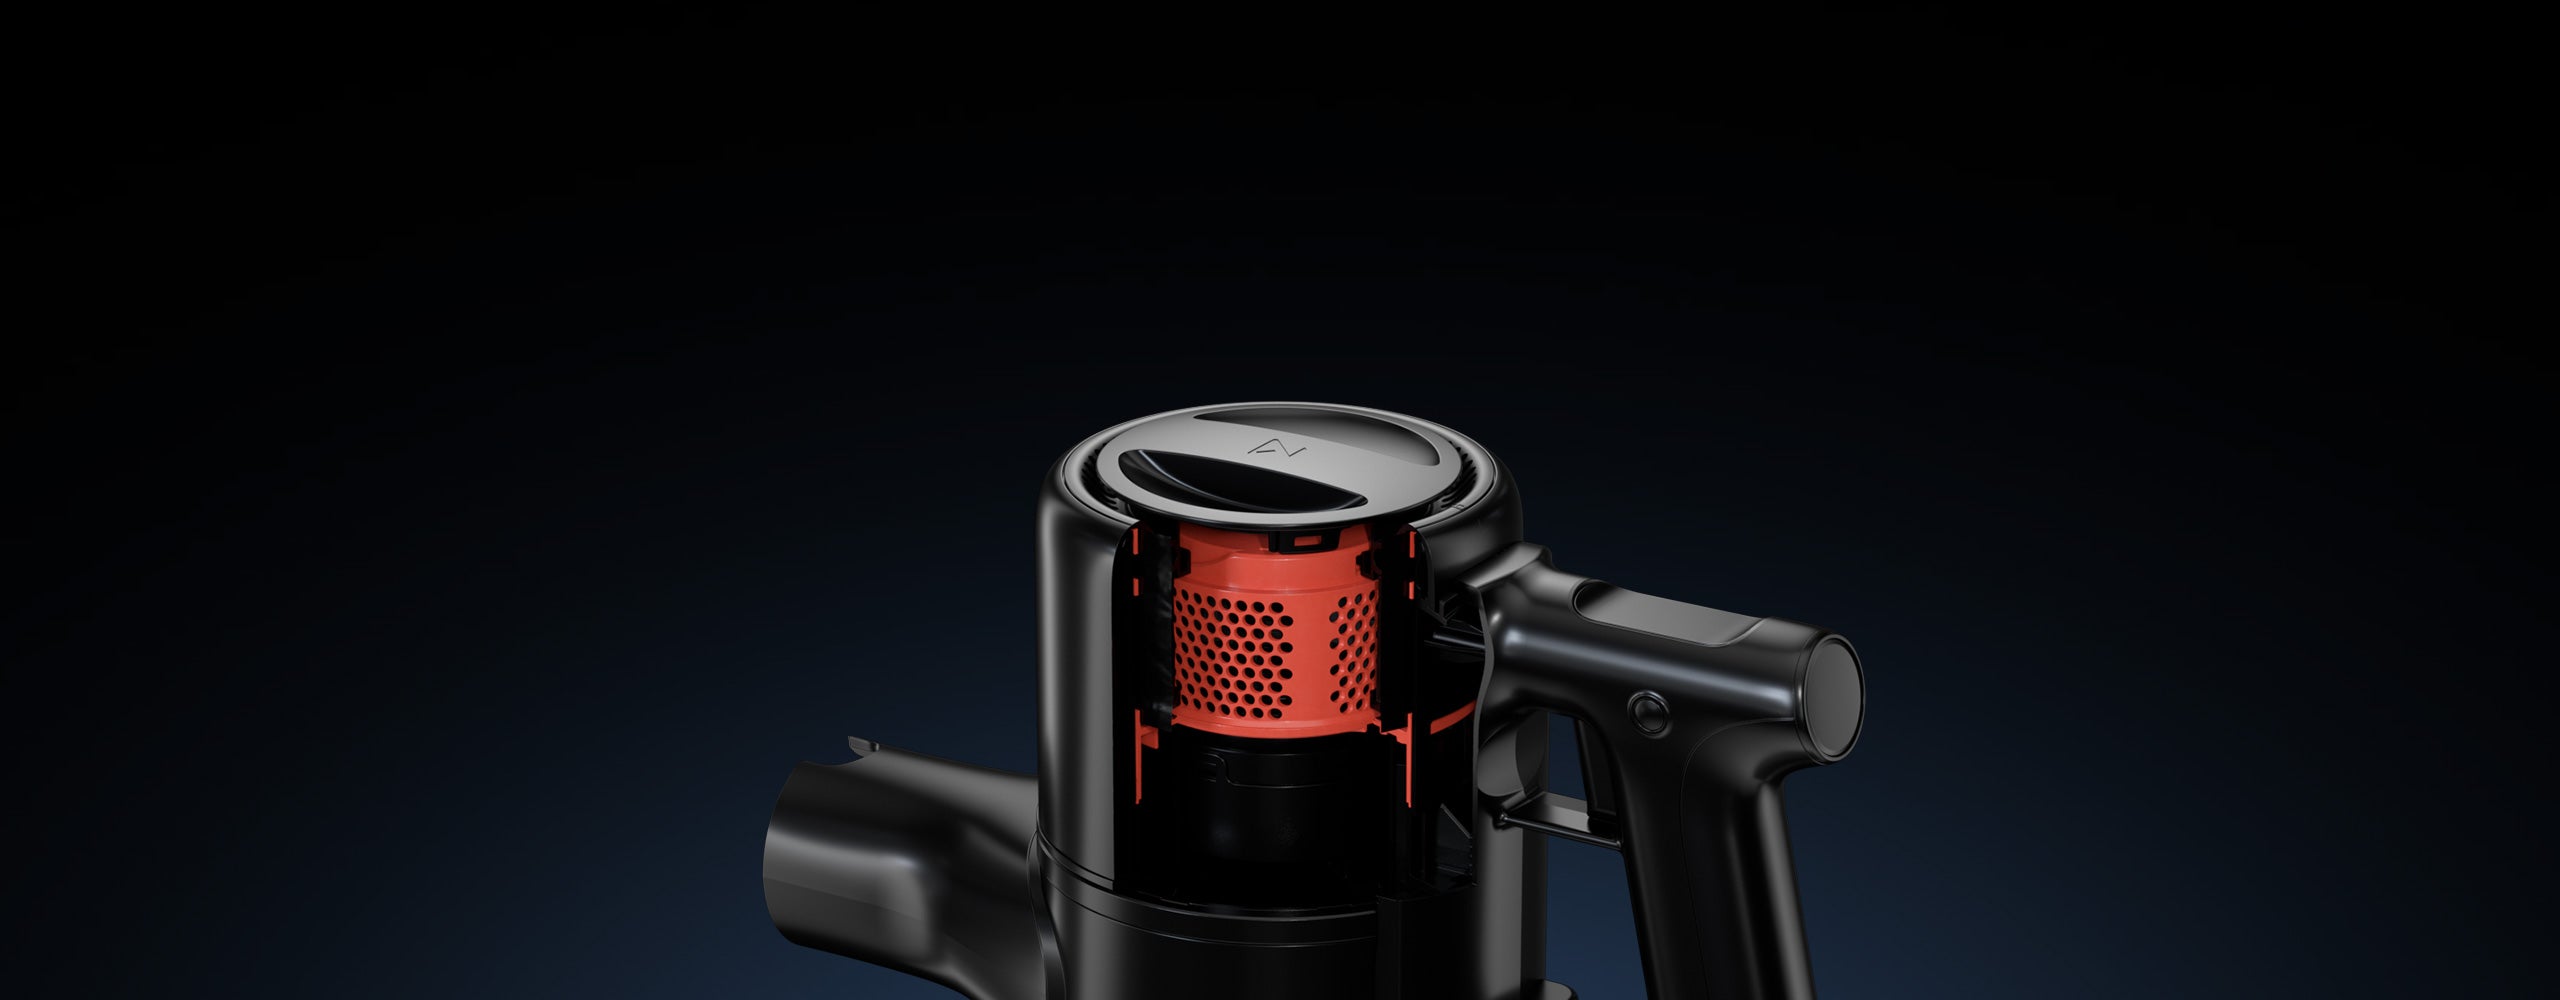 Le Roborock H6 minimize le bruit grâce à sa chambre d'amortissement, son système de contrôle d'air et son filtre arrière